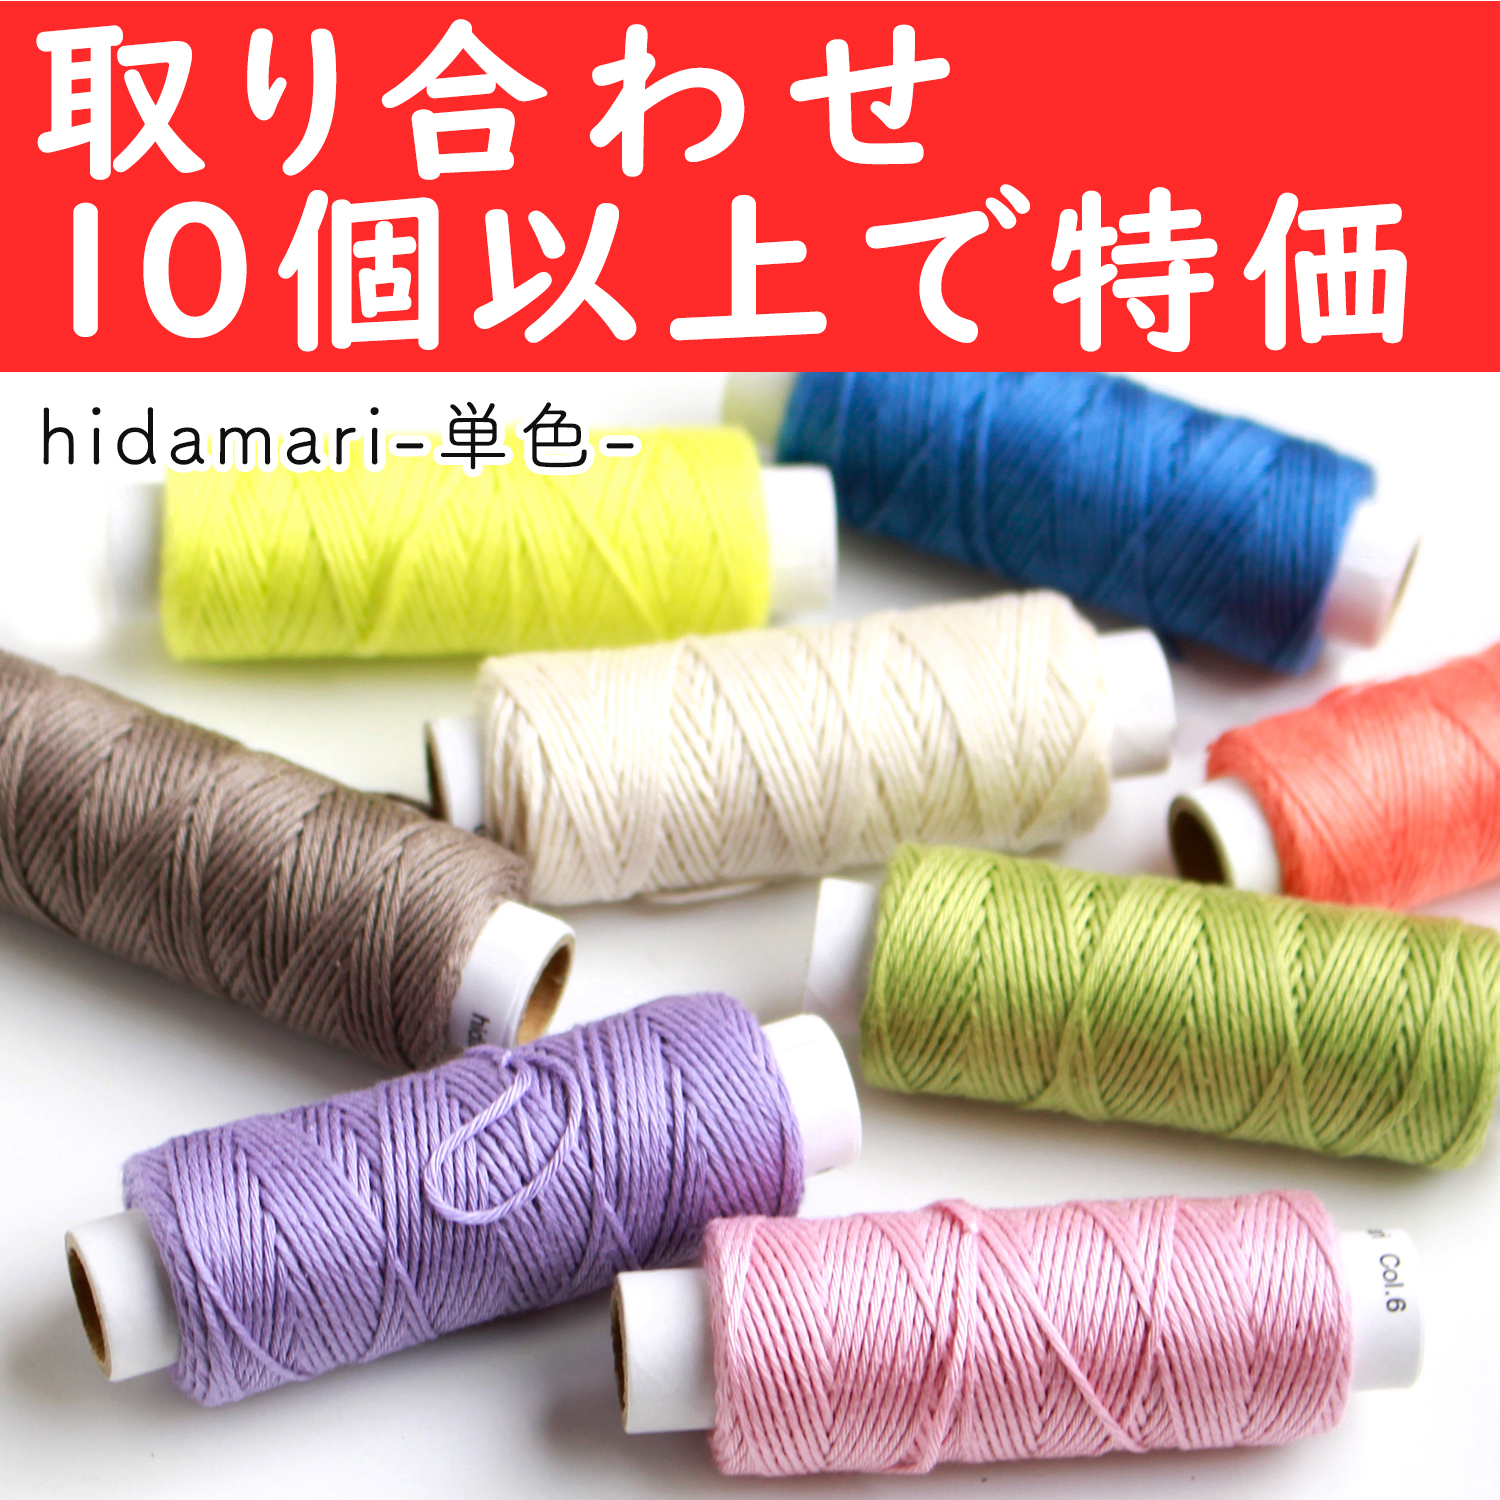 【6/20まで】CS122301-OVER10 コスモ 刺し子糸(単色) - hidamari - 取り合わせ10個以上で特価 (個)